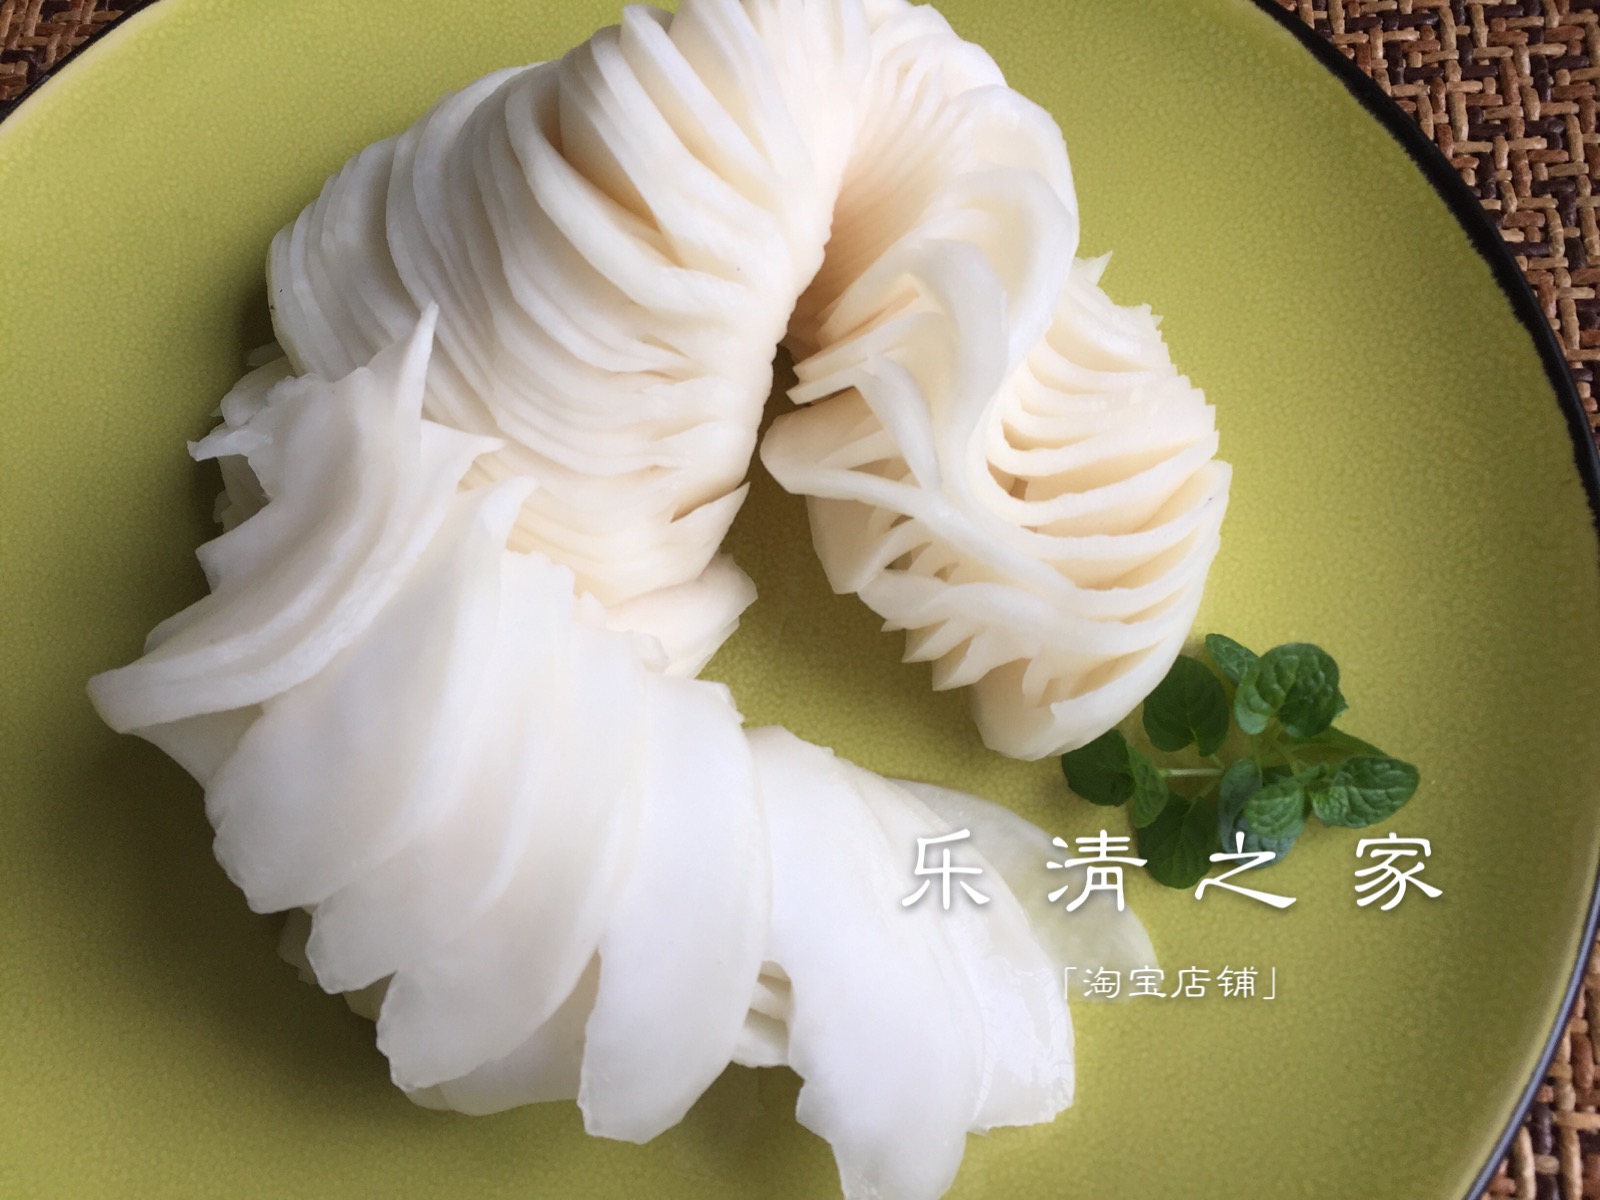 【萝卜类生】温州农家腌呛萝卜生/盘菜生甜辣菜500克乐清之家柳市